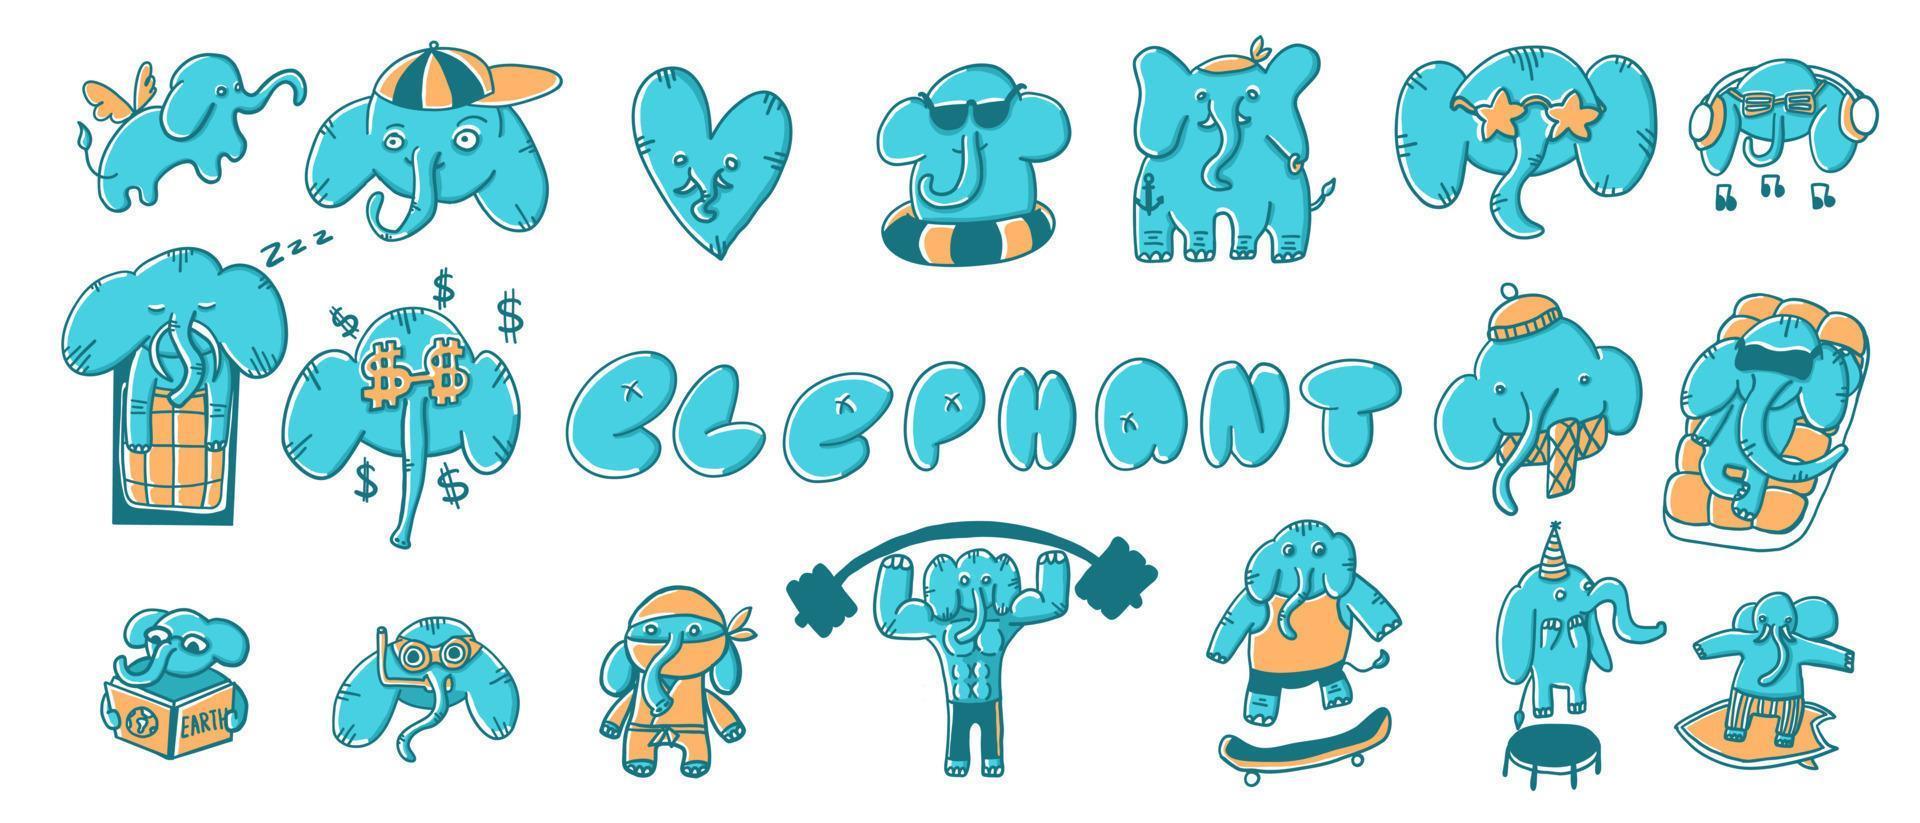 Elefanten in verschiedenen Situationen. vektorillustration im flachen stil der karikatur lokalisiert auf weißem hintergrund. vektor